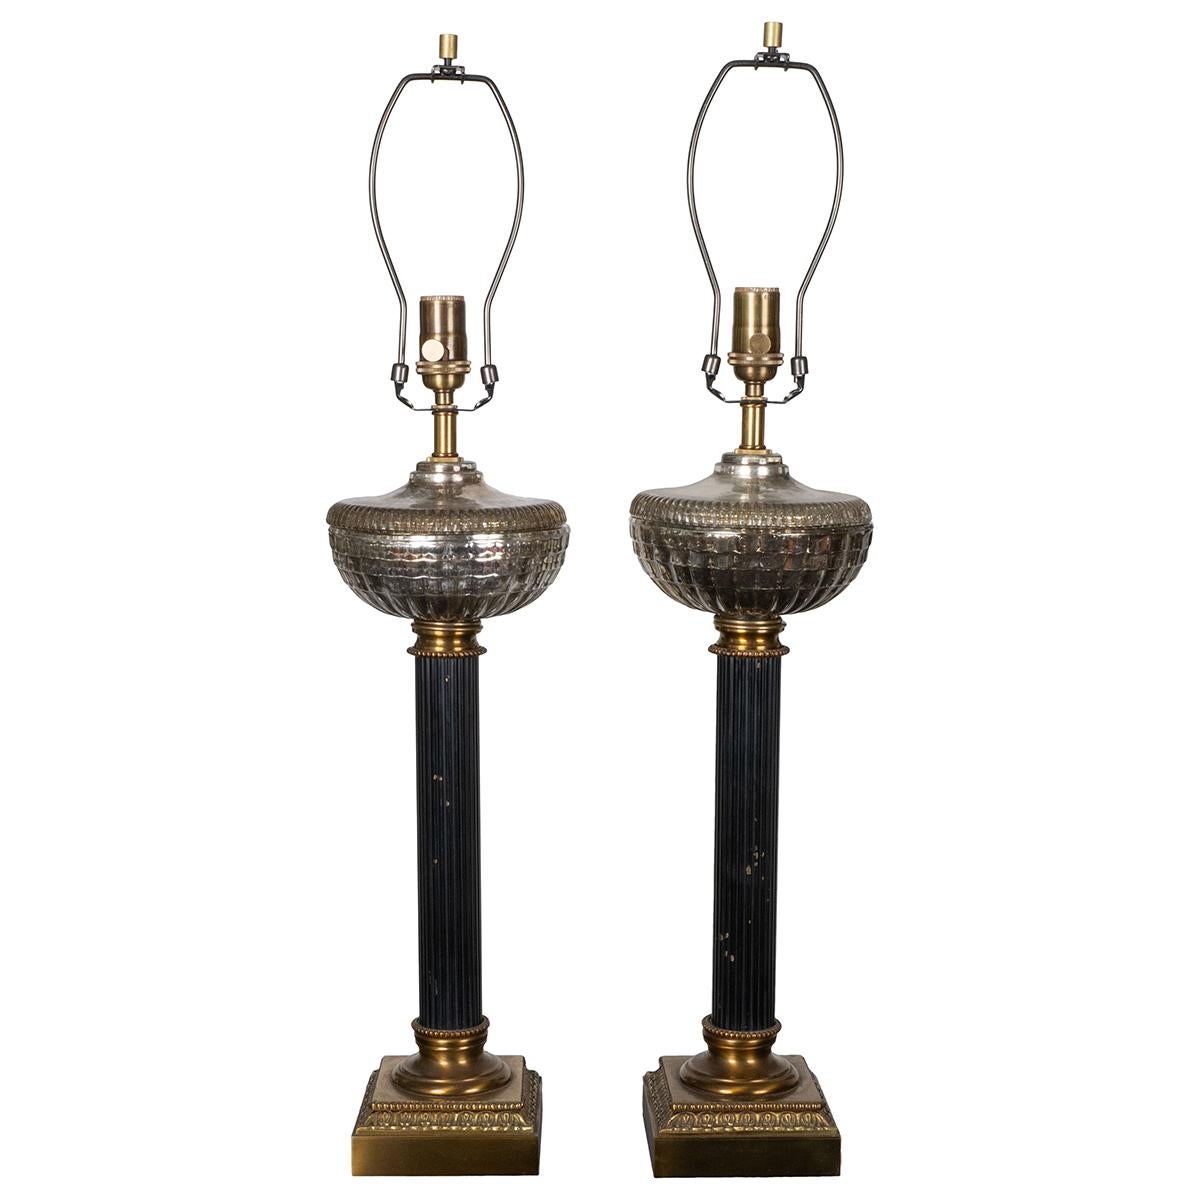 Zwei klassizistische Säulen-Tischlampen aus emailliertem Metall und Messing mit gegossenen Quecksilberglaselementen.